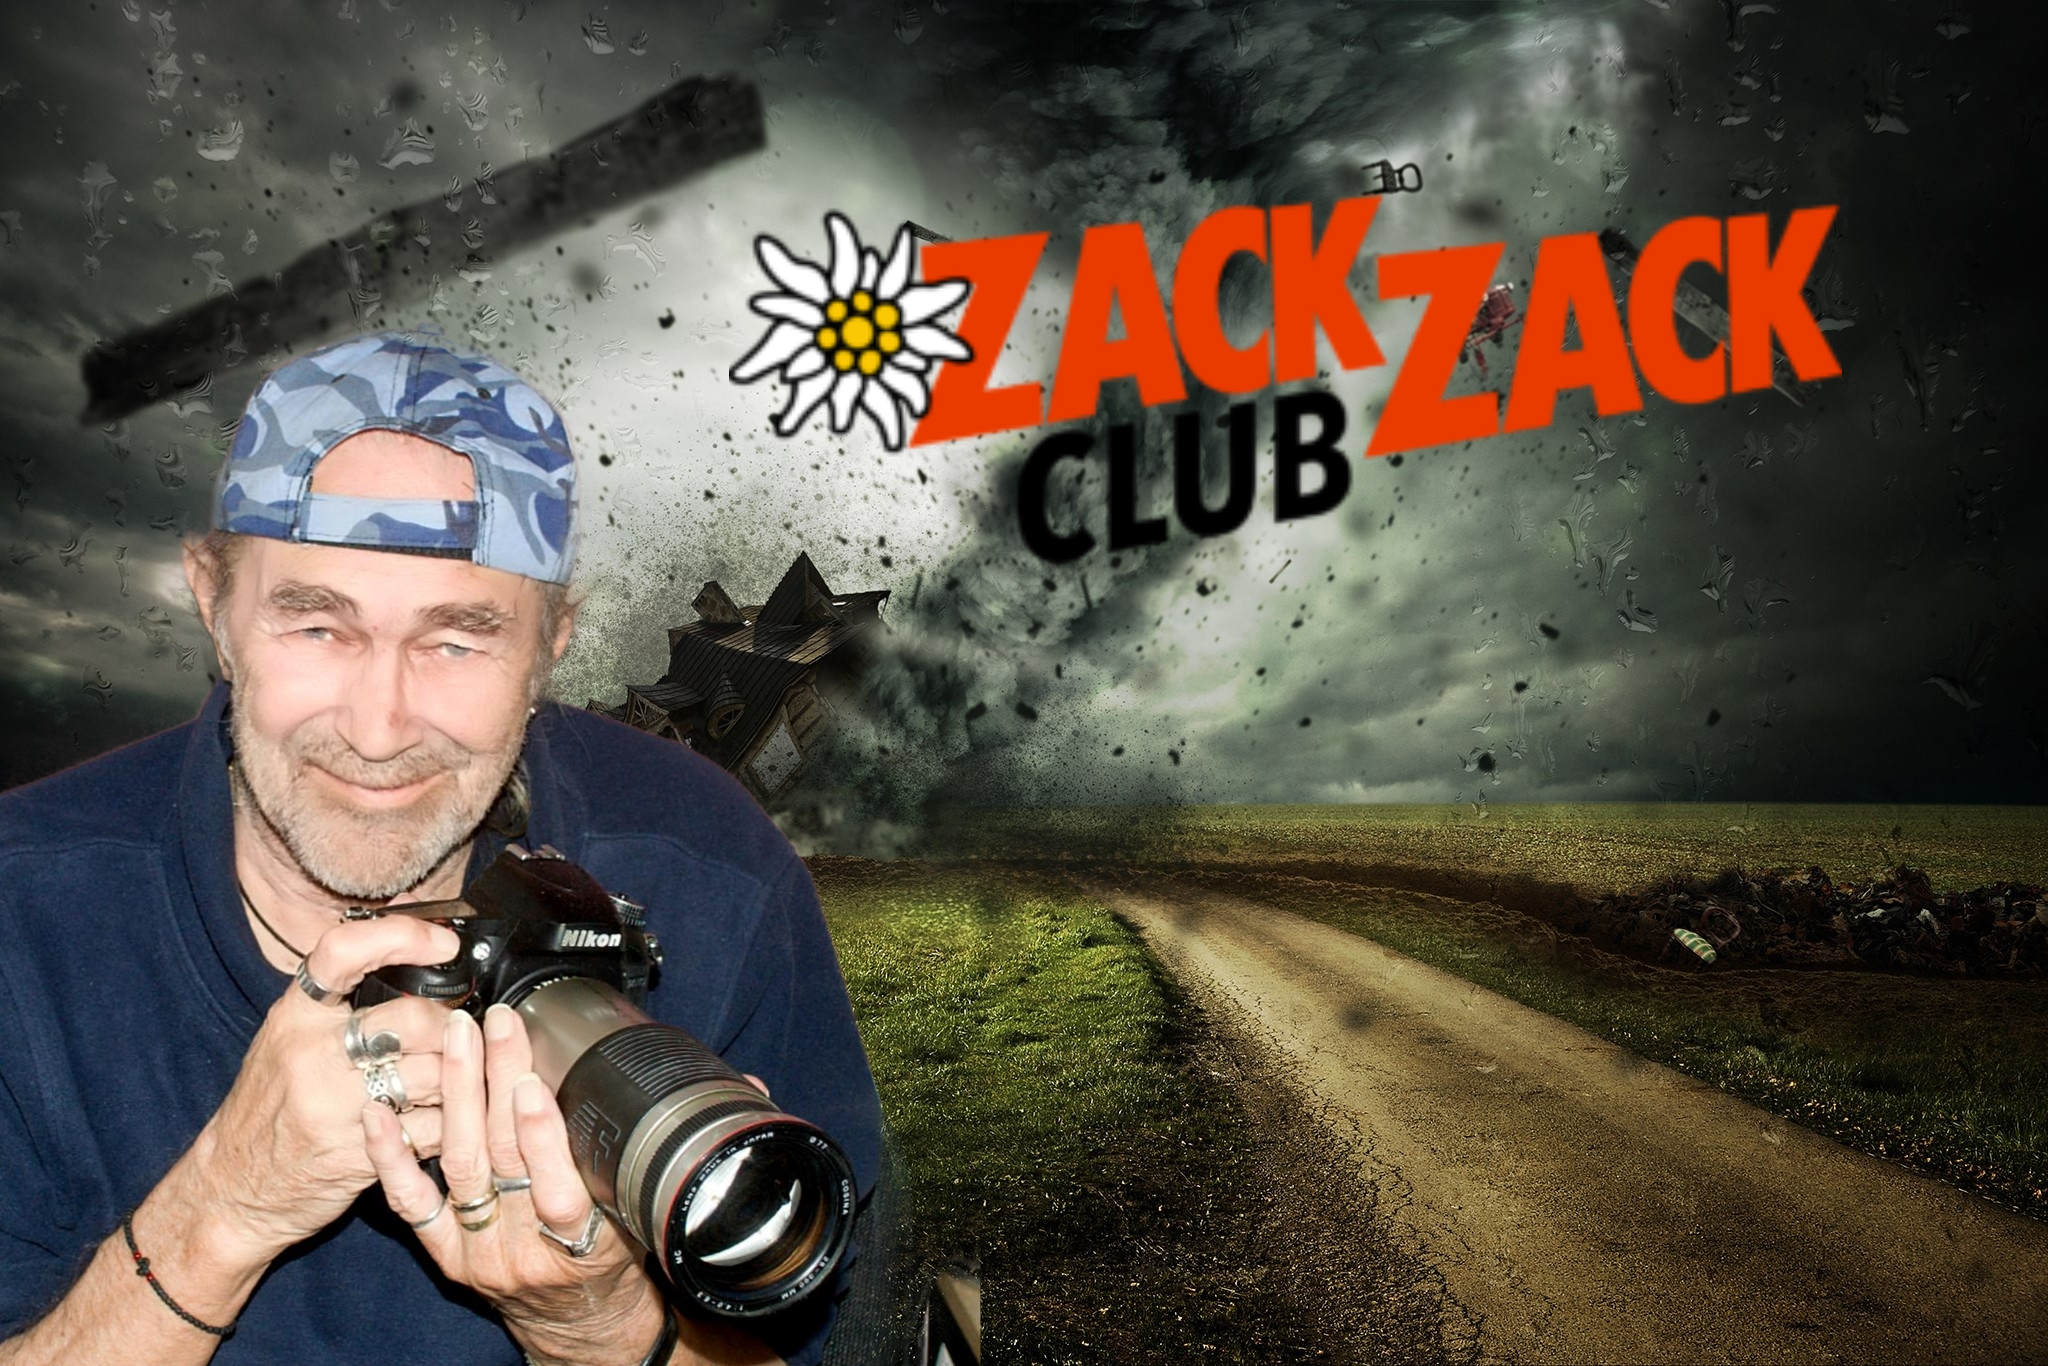 ZackZack-Club | Freie-Pressemitteilungen.de